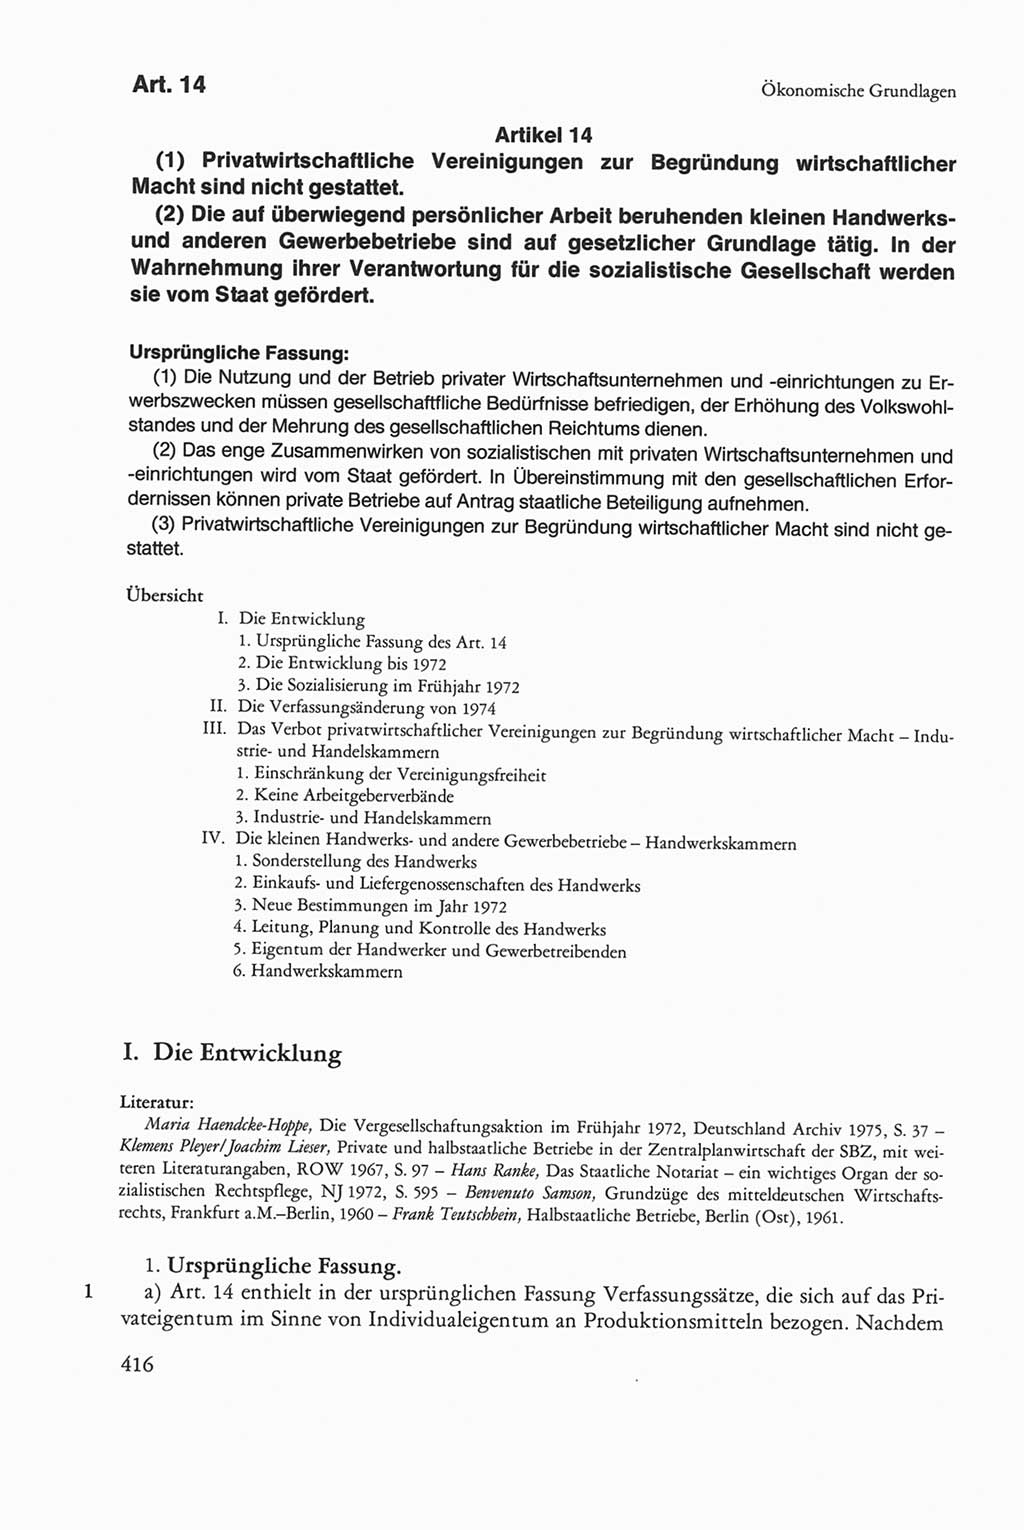 Die sozialistische Verfassung der Deutschen Demokratischen Republik (DDR), Kommentar 1982, Seite 416 (Soz. Verf. DDR Komm. 1982, S. 416)